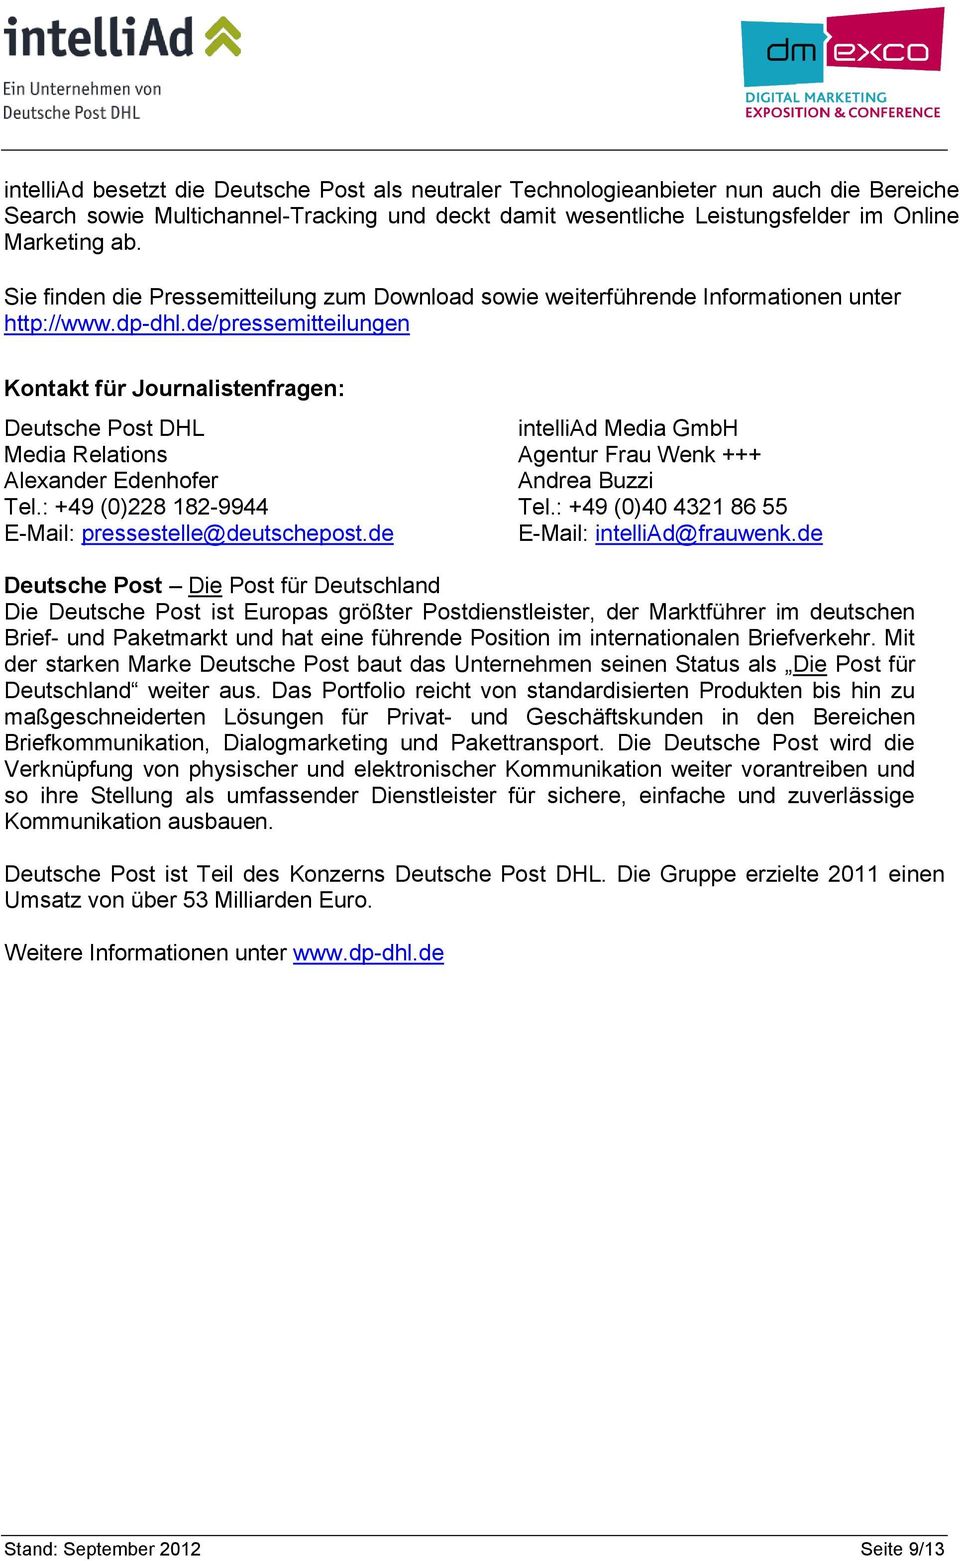 de/pressemitteilungen Kontakt für Journalistenfragen: Deutsche Post DHL intelliad Media GmbH Media Relations Agentur Frau Wenk +++ Alexander Edenhofer Andrea Buzzi Tel.: +49 (0)228 182-9944 Tel.